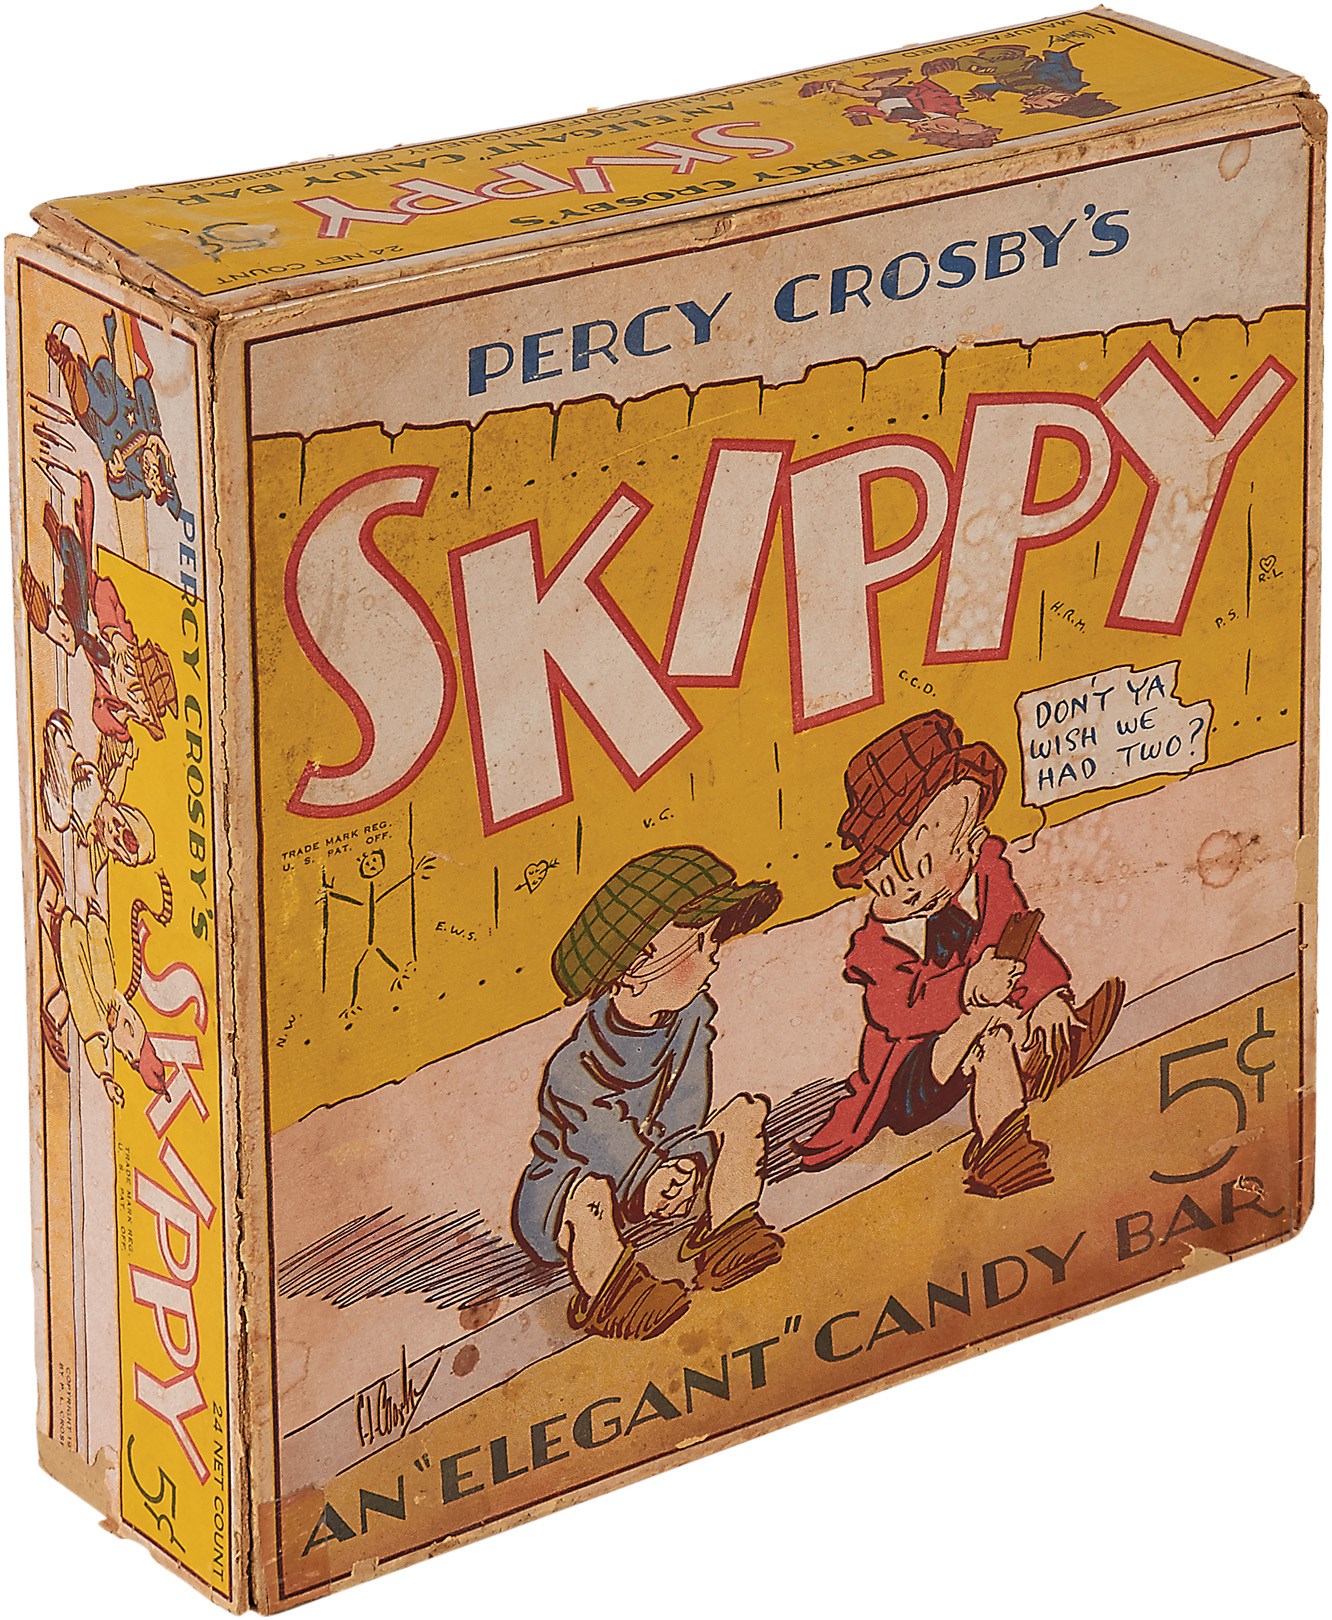 - 1931 Percy Crosby Skippy "Elegant Candy" Bar Display Box